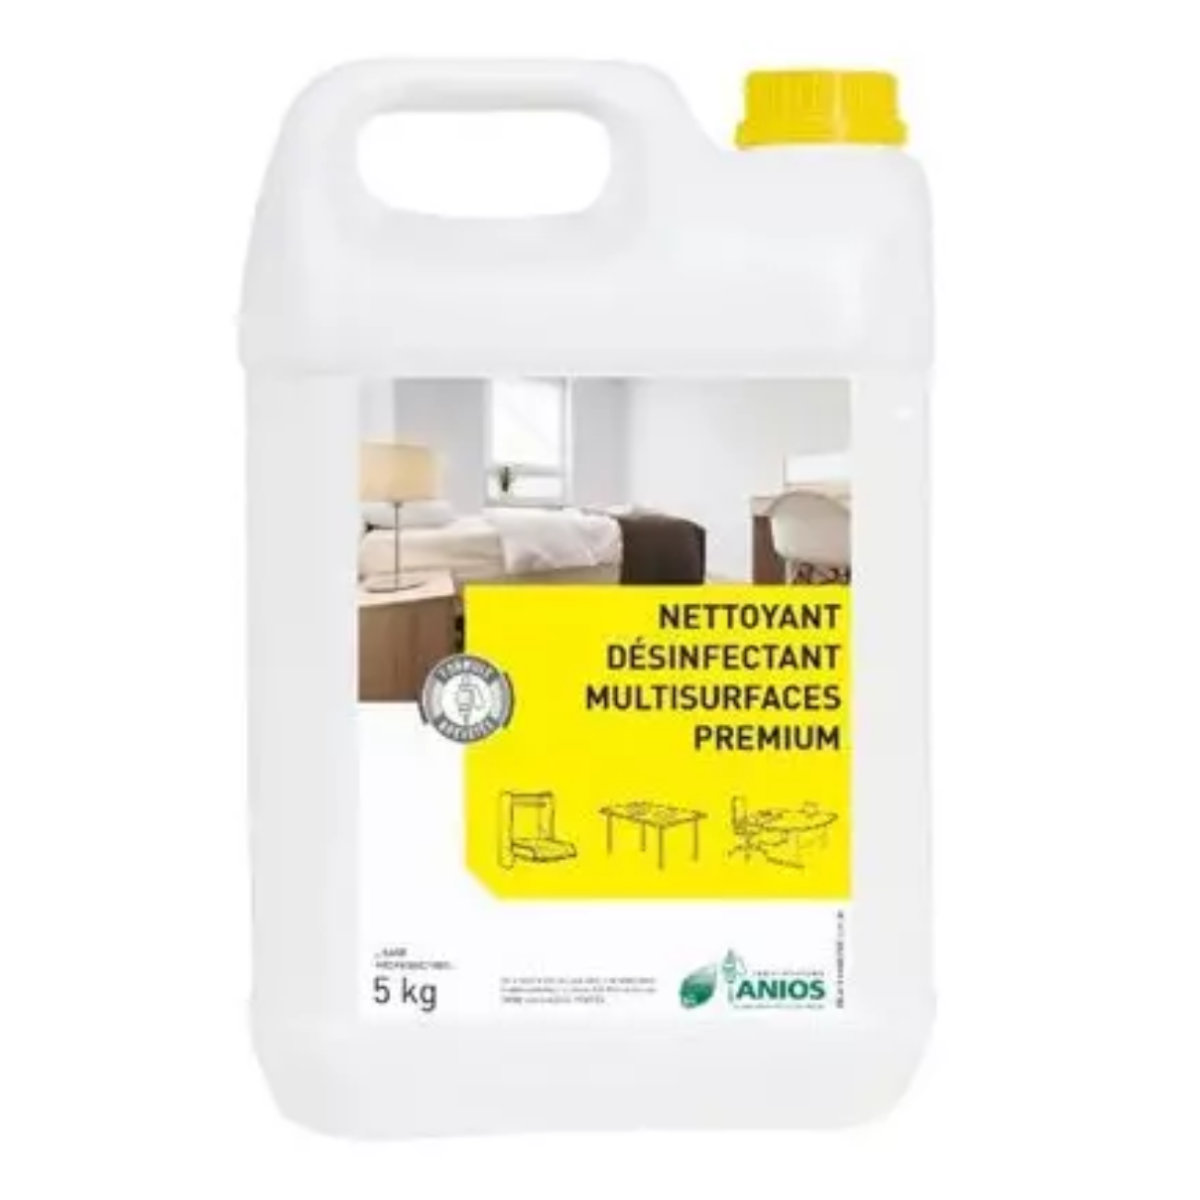 Nettoyant désinfectant bactéricide, fongicide, virucide pour multi- surfaces: toutes les surfaces modernes - Premium ANIOS_0